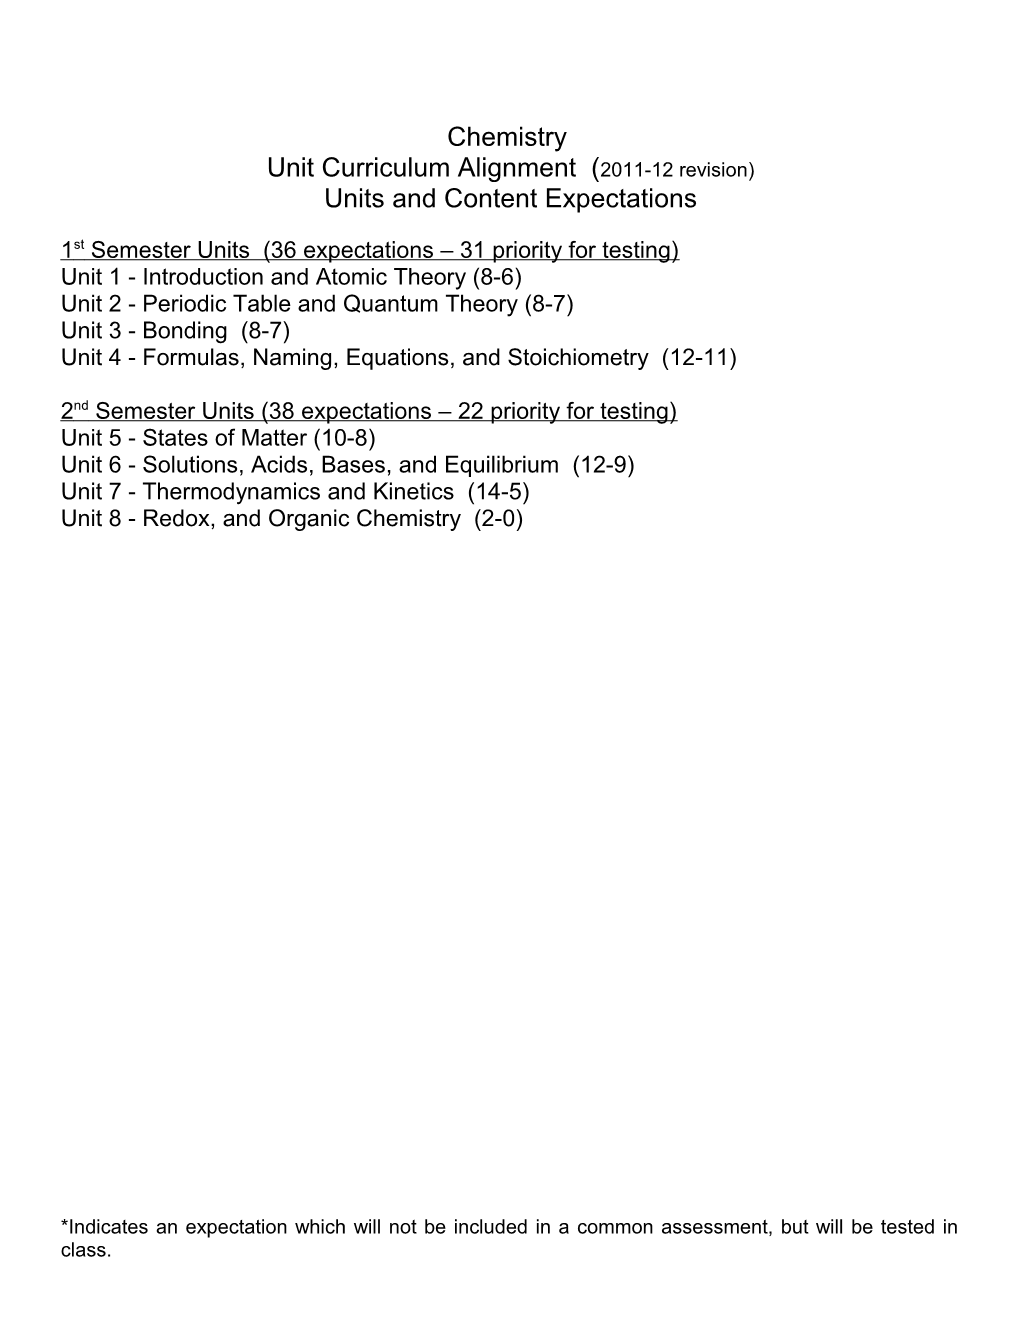 Unit Curriculum Alignment (2011-12 Revision)